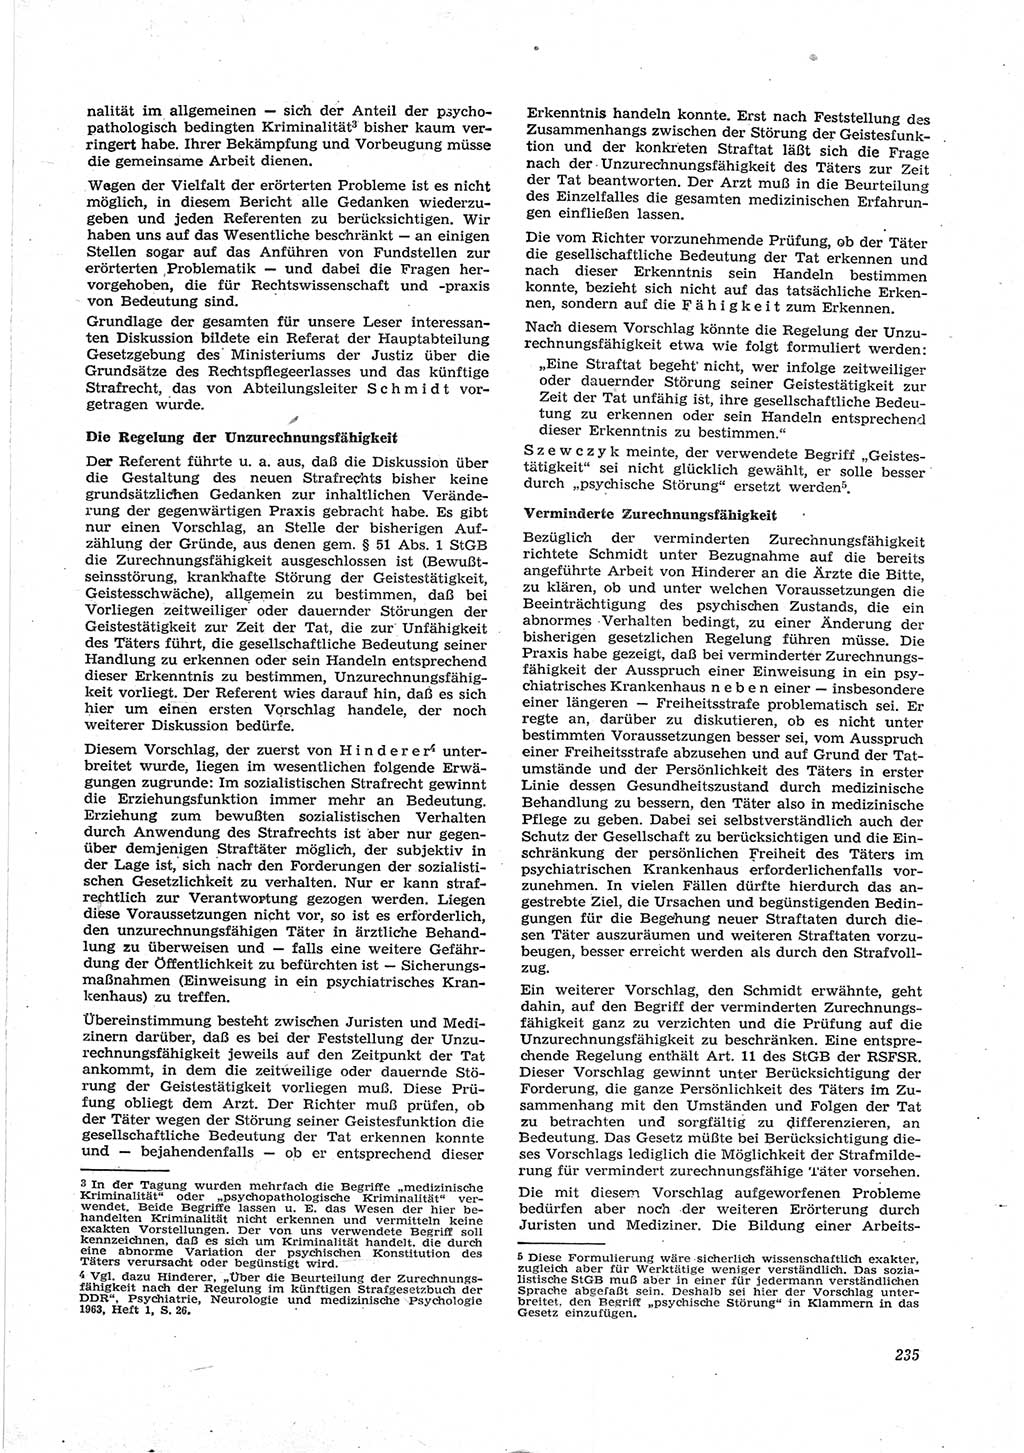 Neue Justiz (NJ), Zeitschrift für Recht und Rechtswissenschaft [Deutsche Demokratische Republik (DDR)], 17. Jahrgang 1963, Seite 235 (NJ DDR 1963, S. 235)